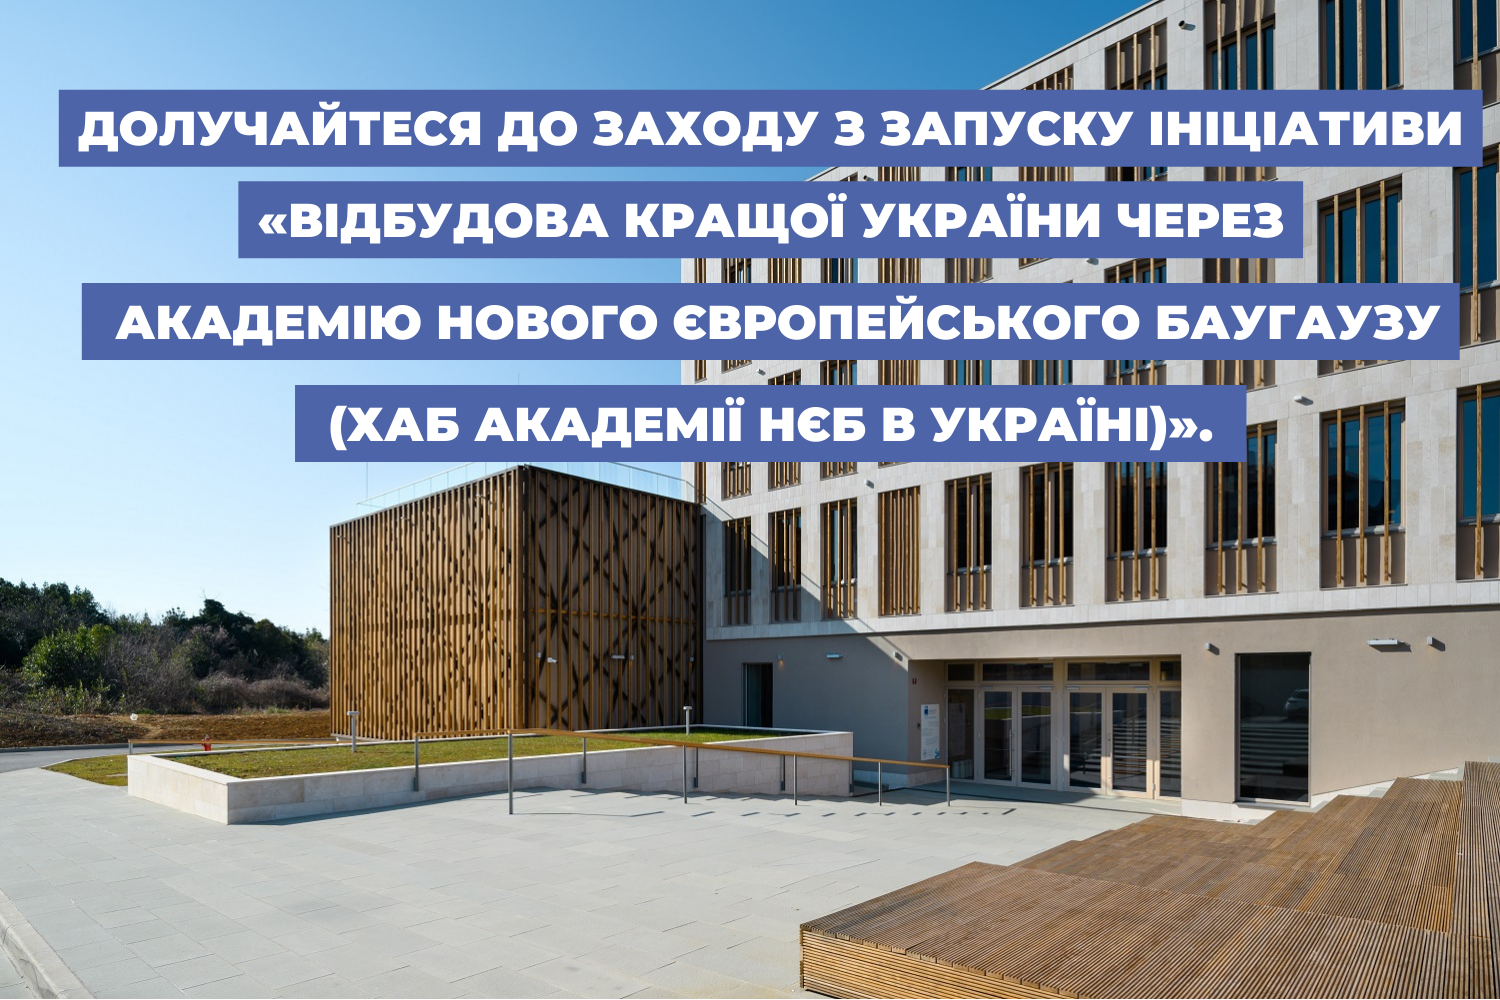 Долучайтеся до заходу з запуску ініціативи «Відбудова кращої України через Академію Нового Європейського Баугаузу (Хаб Академії НЄБ в Україні)».